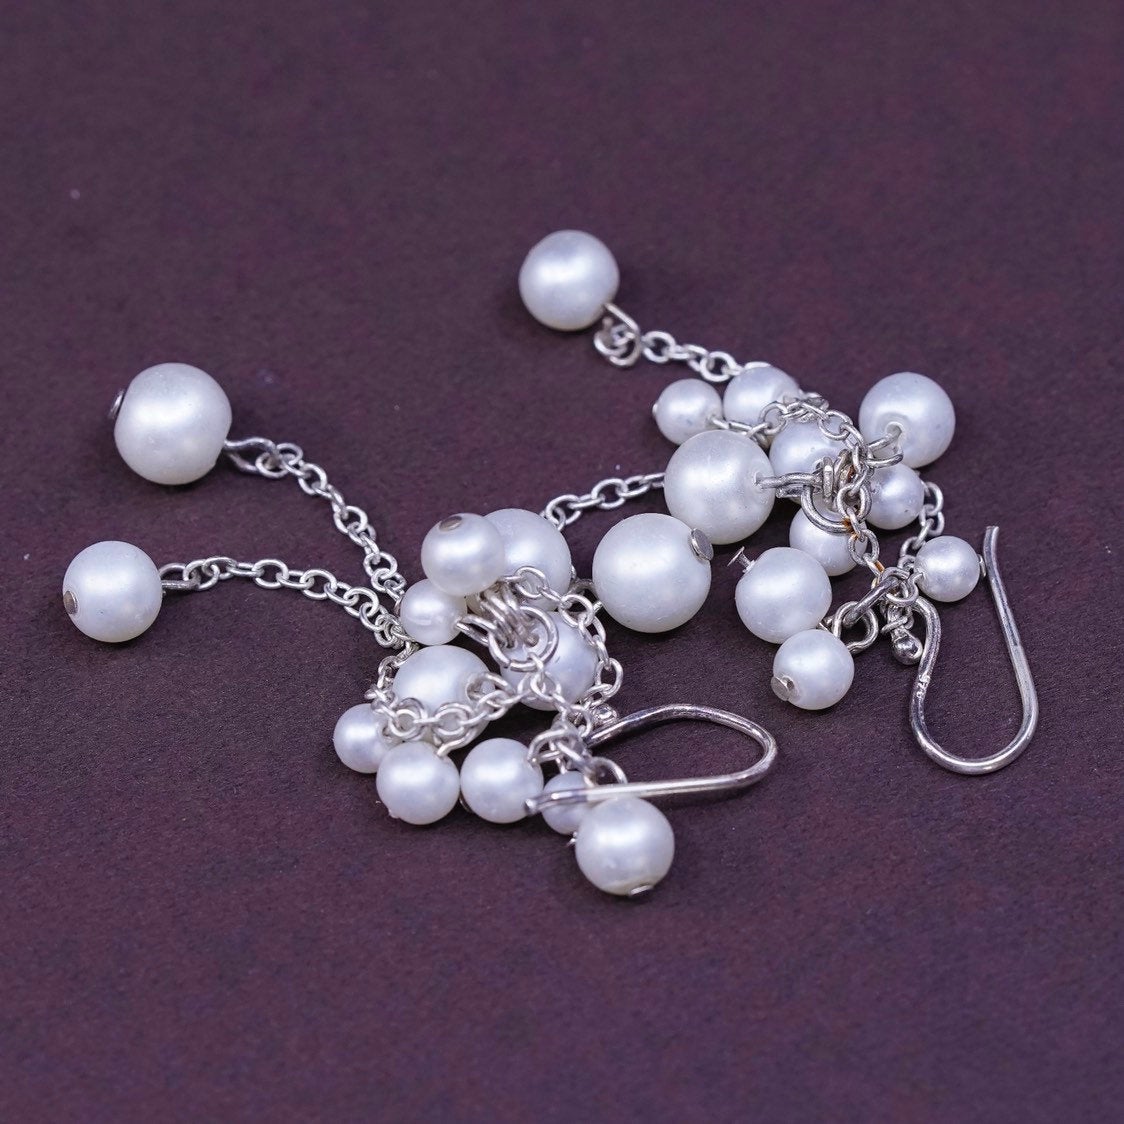 VTG Sterling silver Handmade earrings, 925 w/ pearl cluster